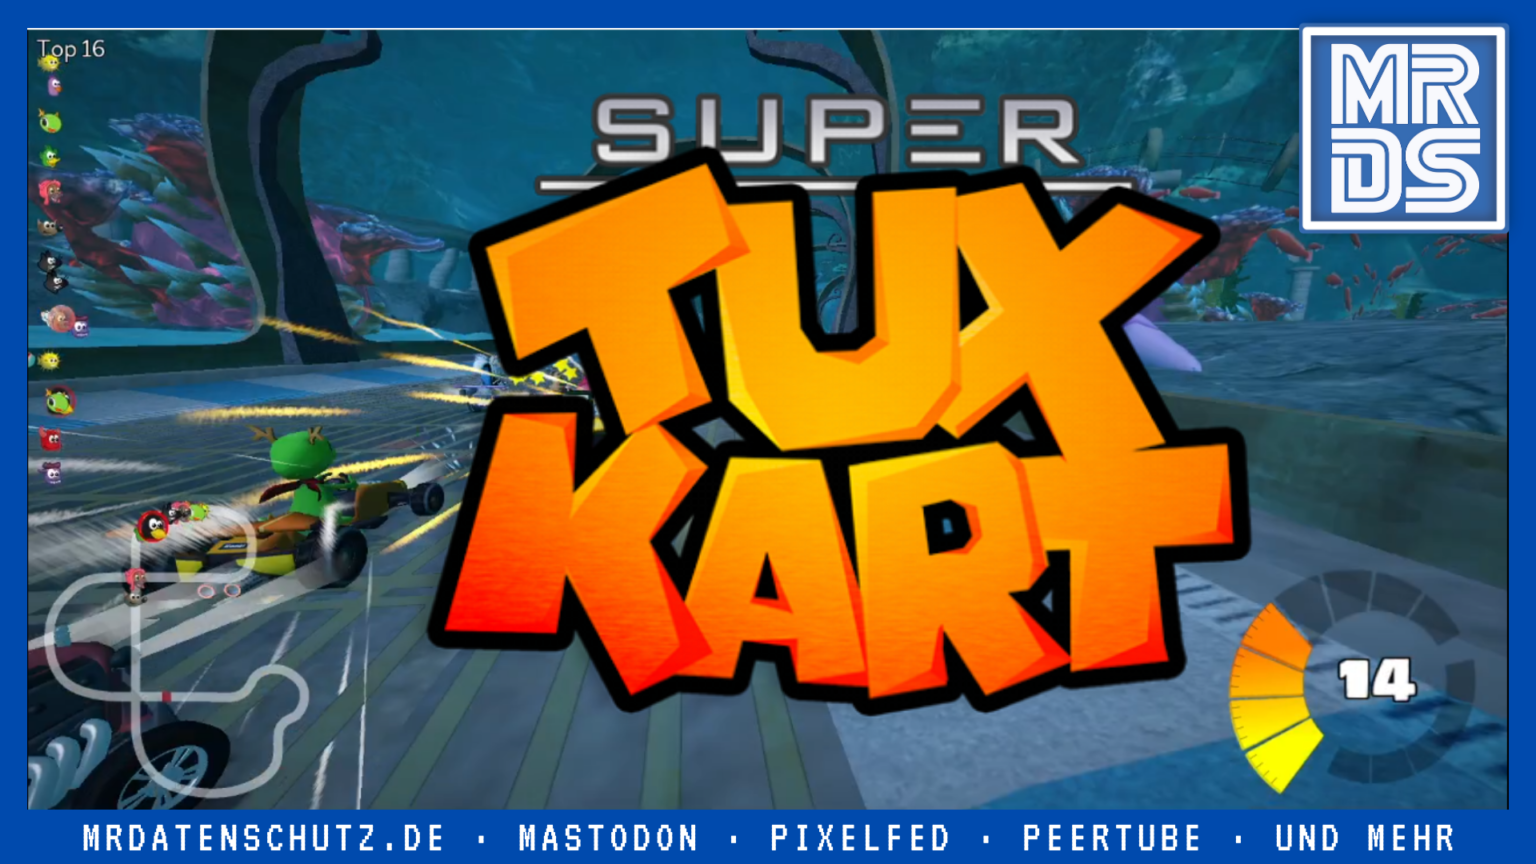 supertuxkart features sara